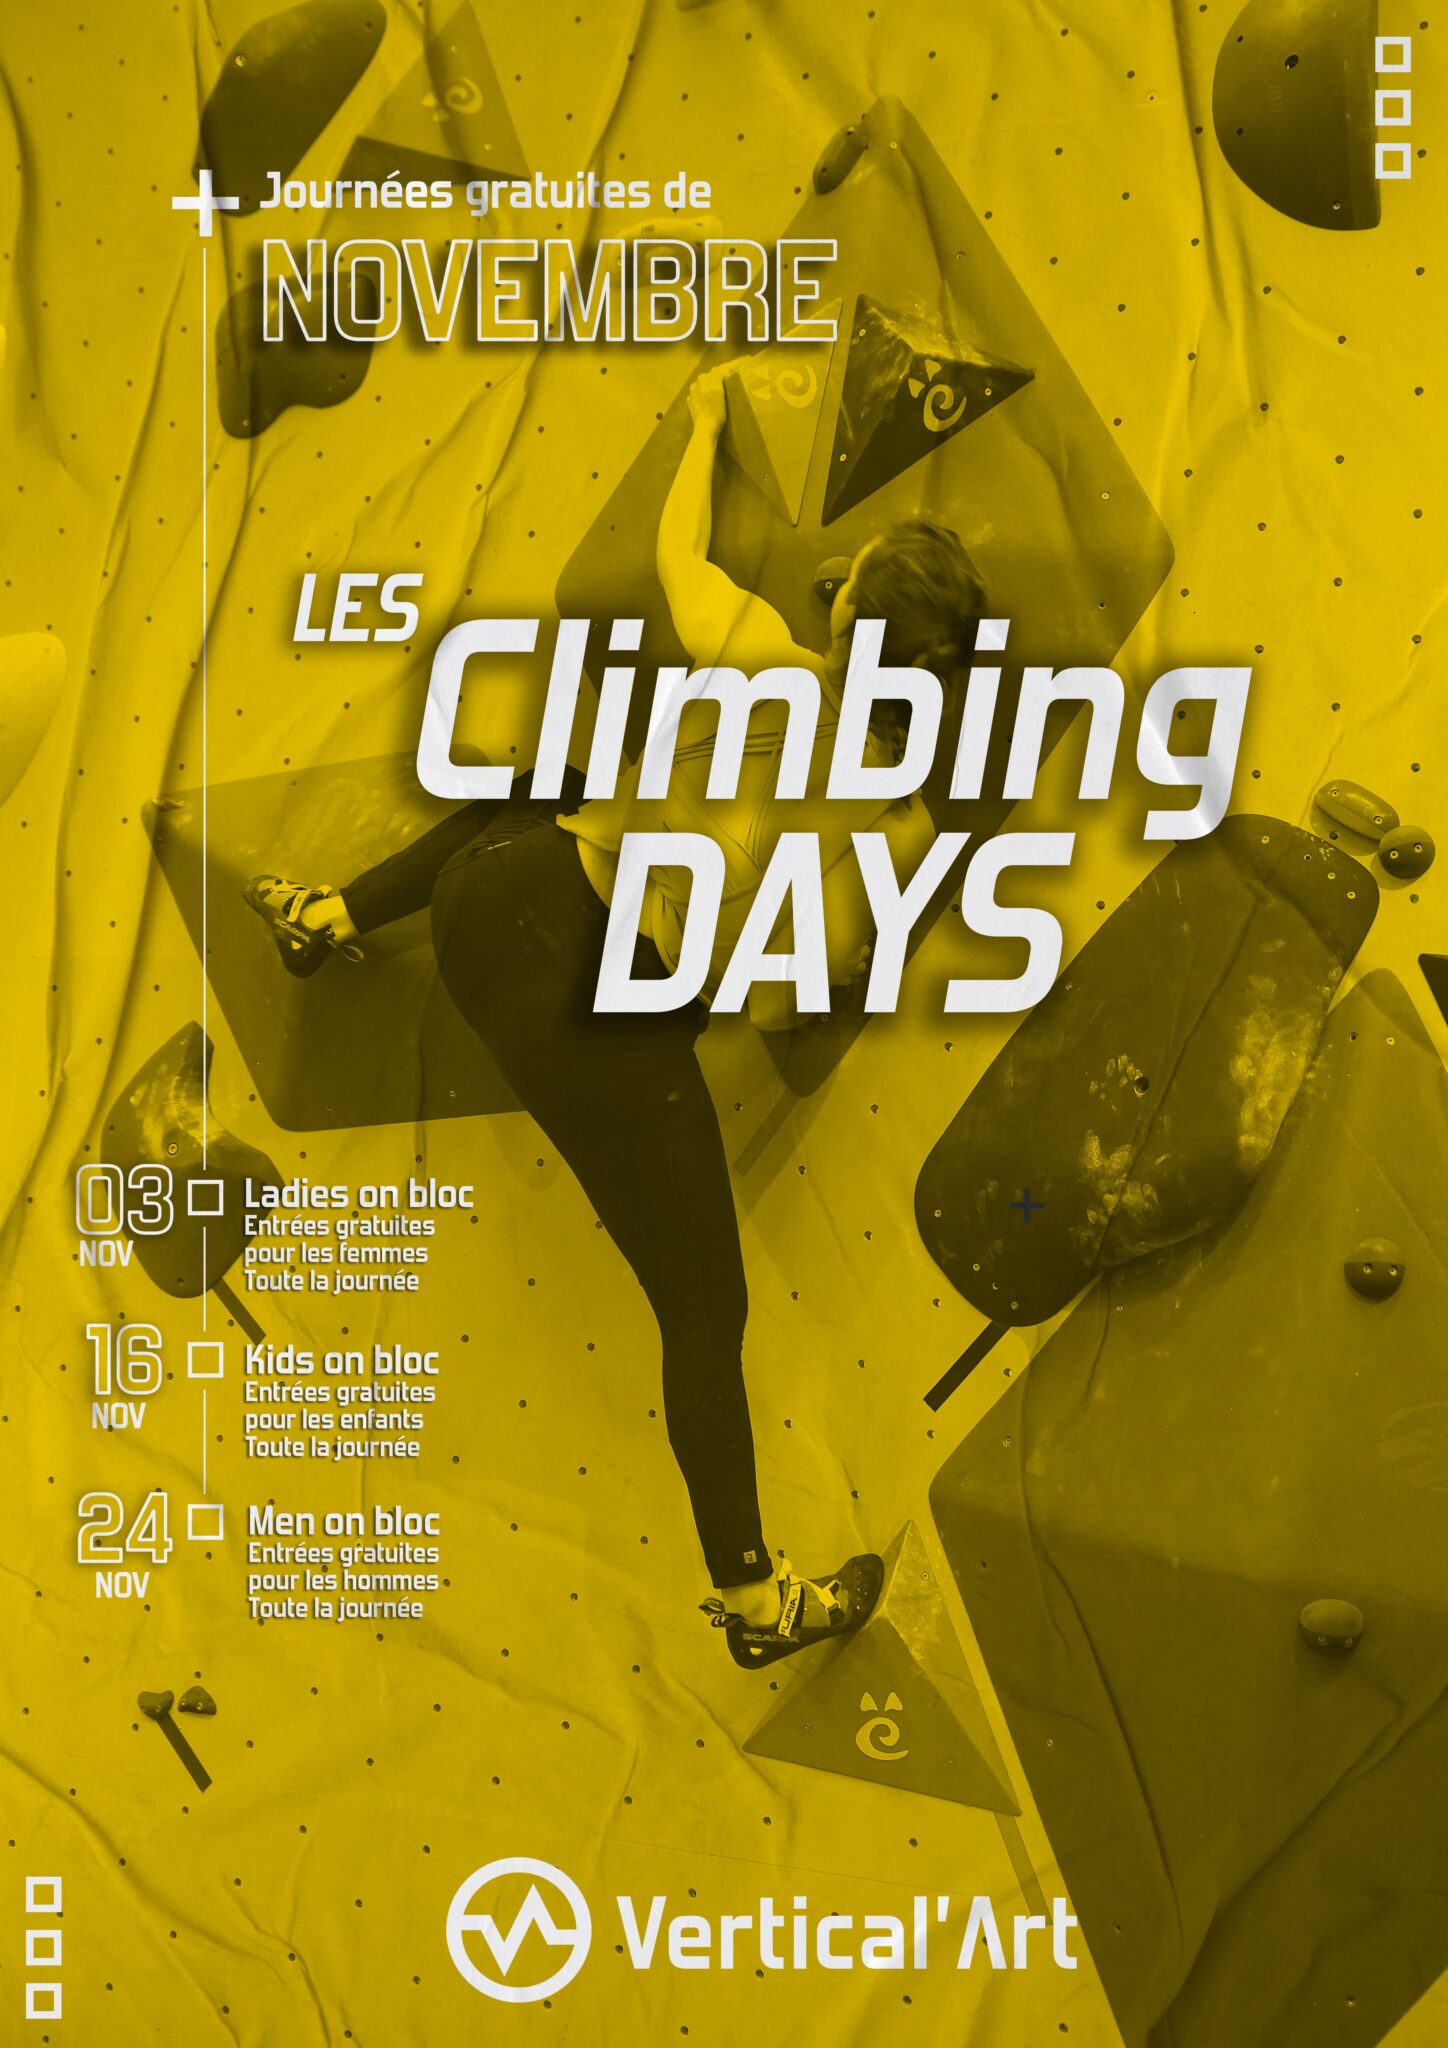 Climbing days à Vertical'Art Le Mans Novembre 2022